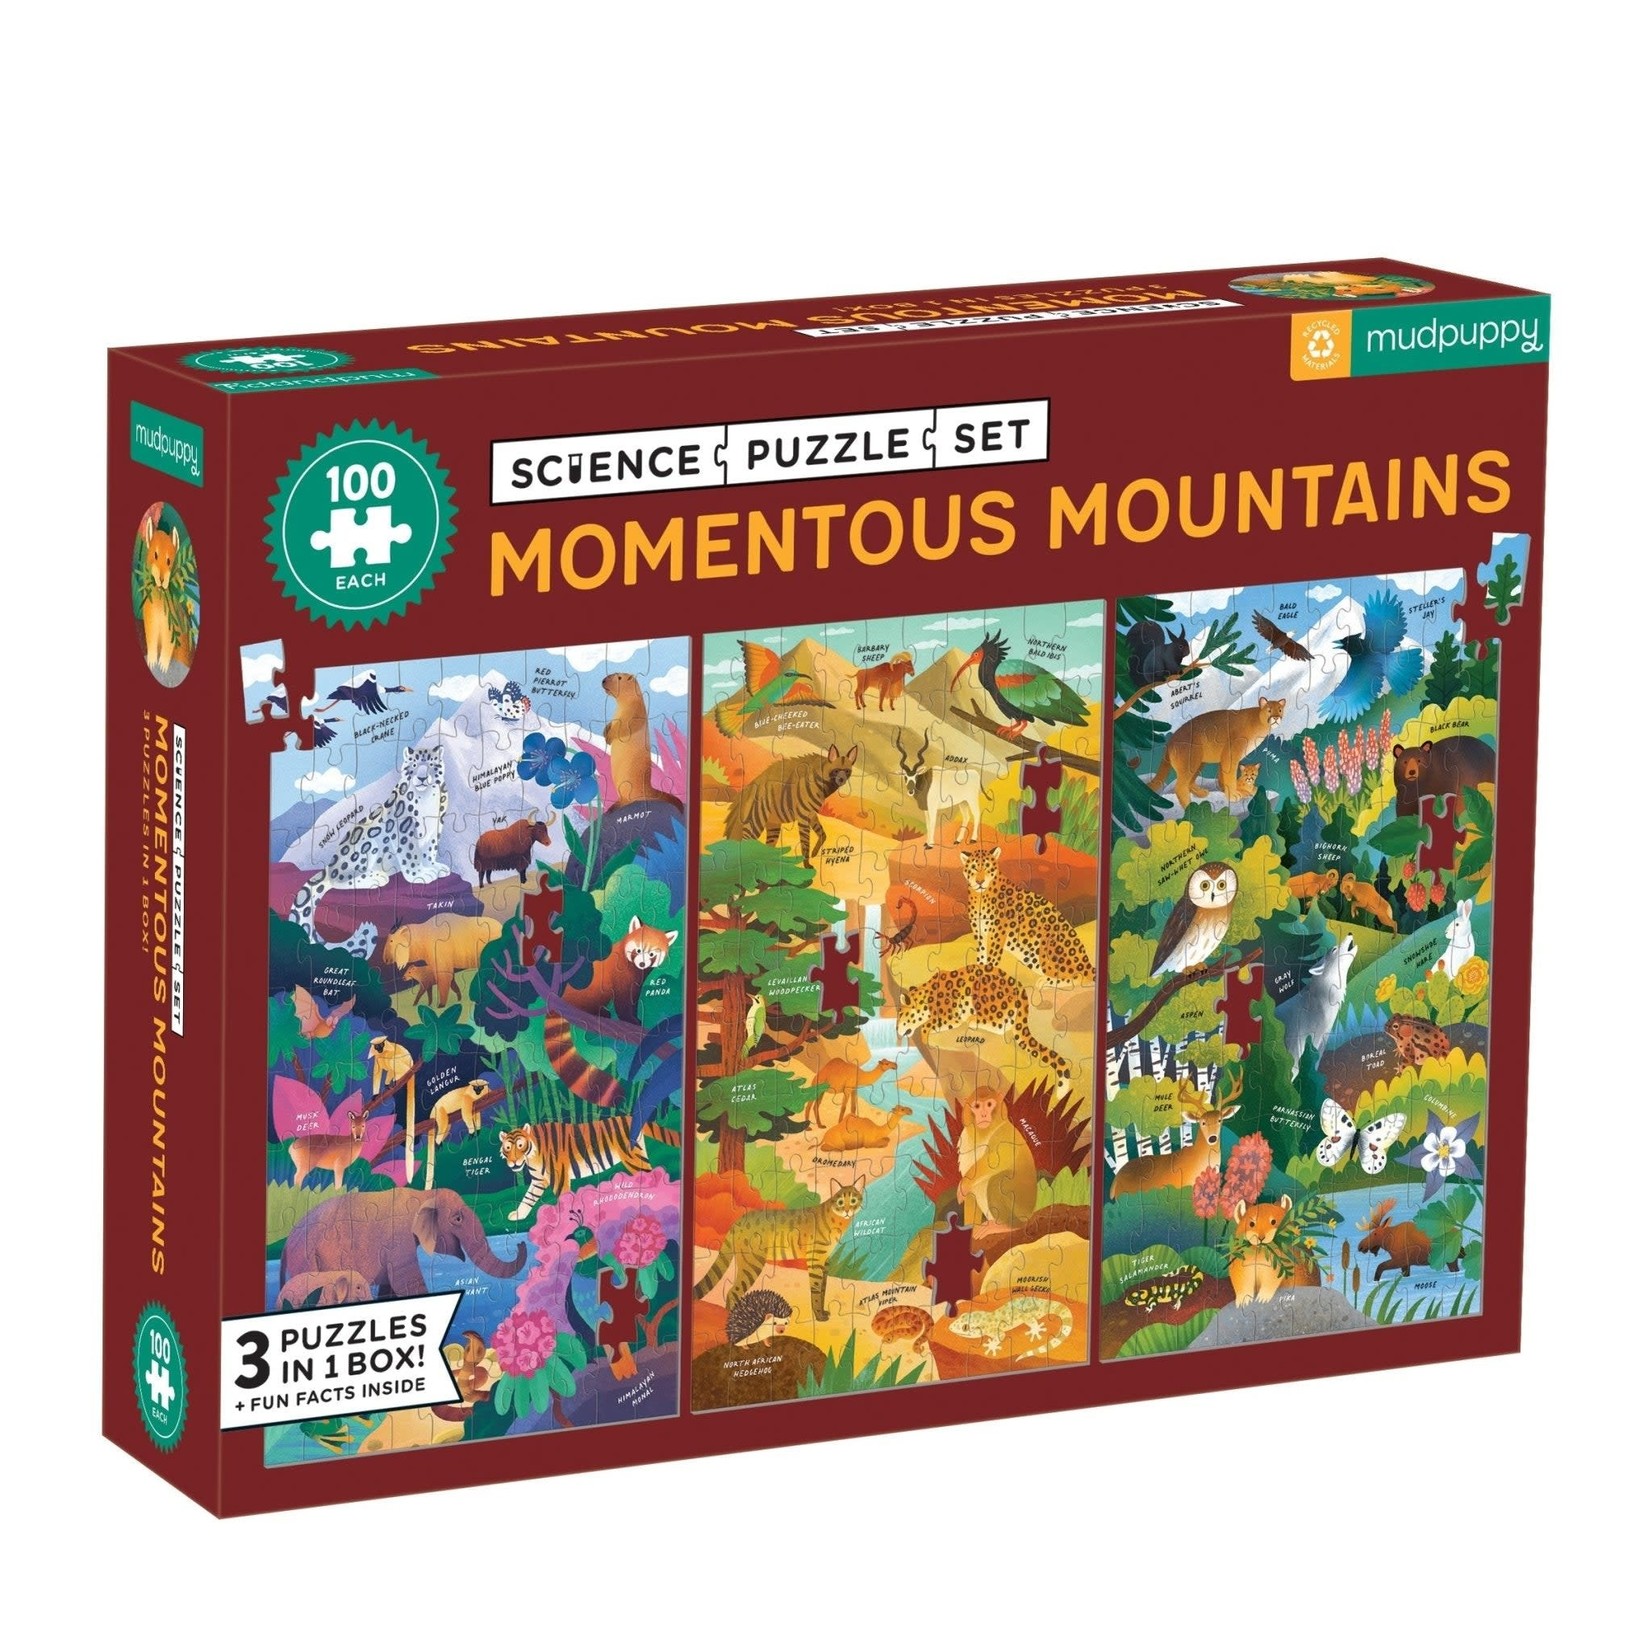 Mudpuppy Science Puzzle Set - Momentous Mountains 100 Pieces